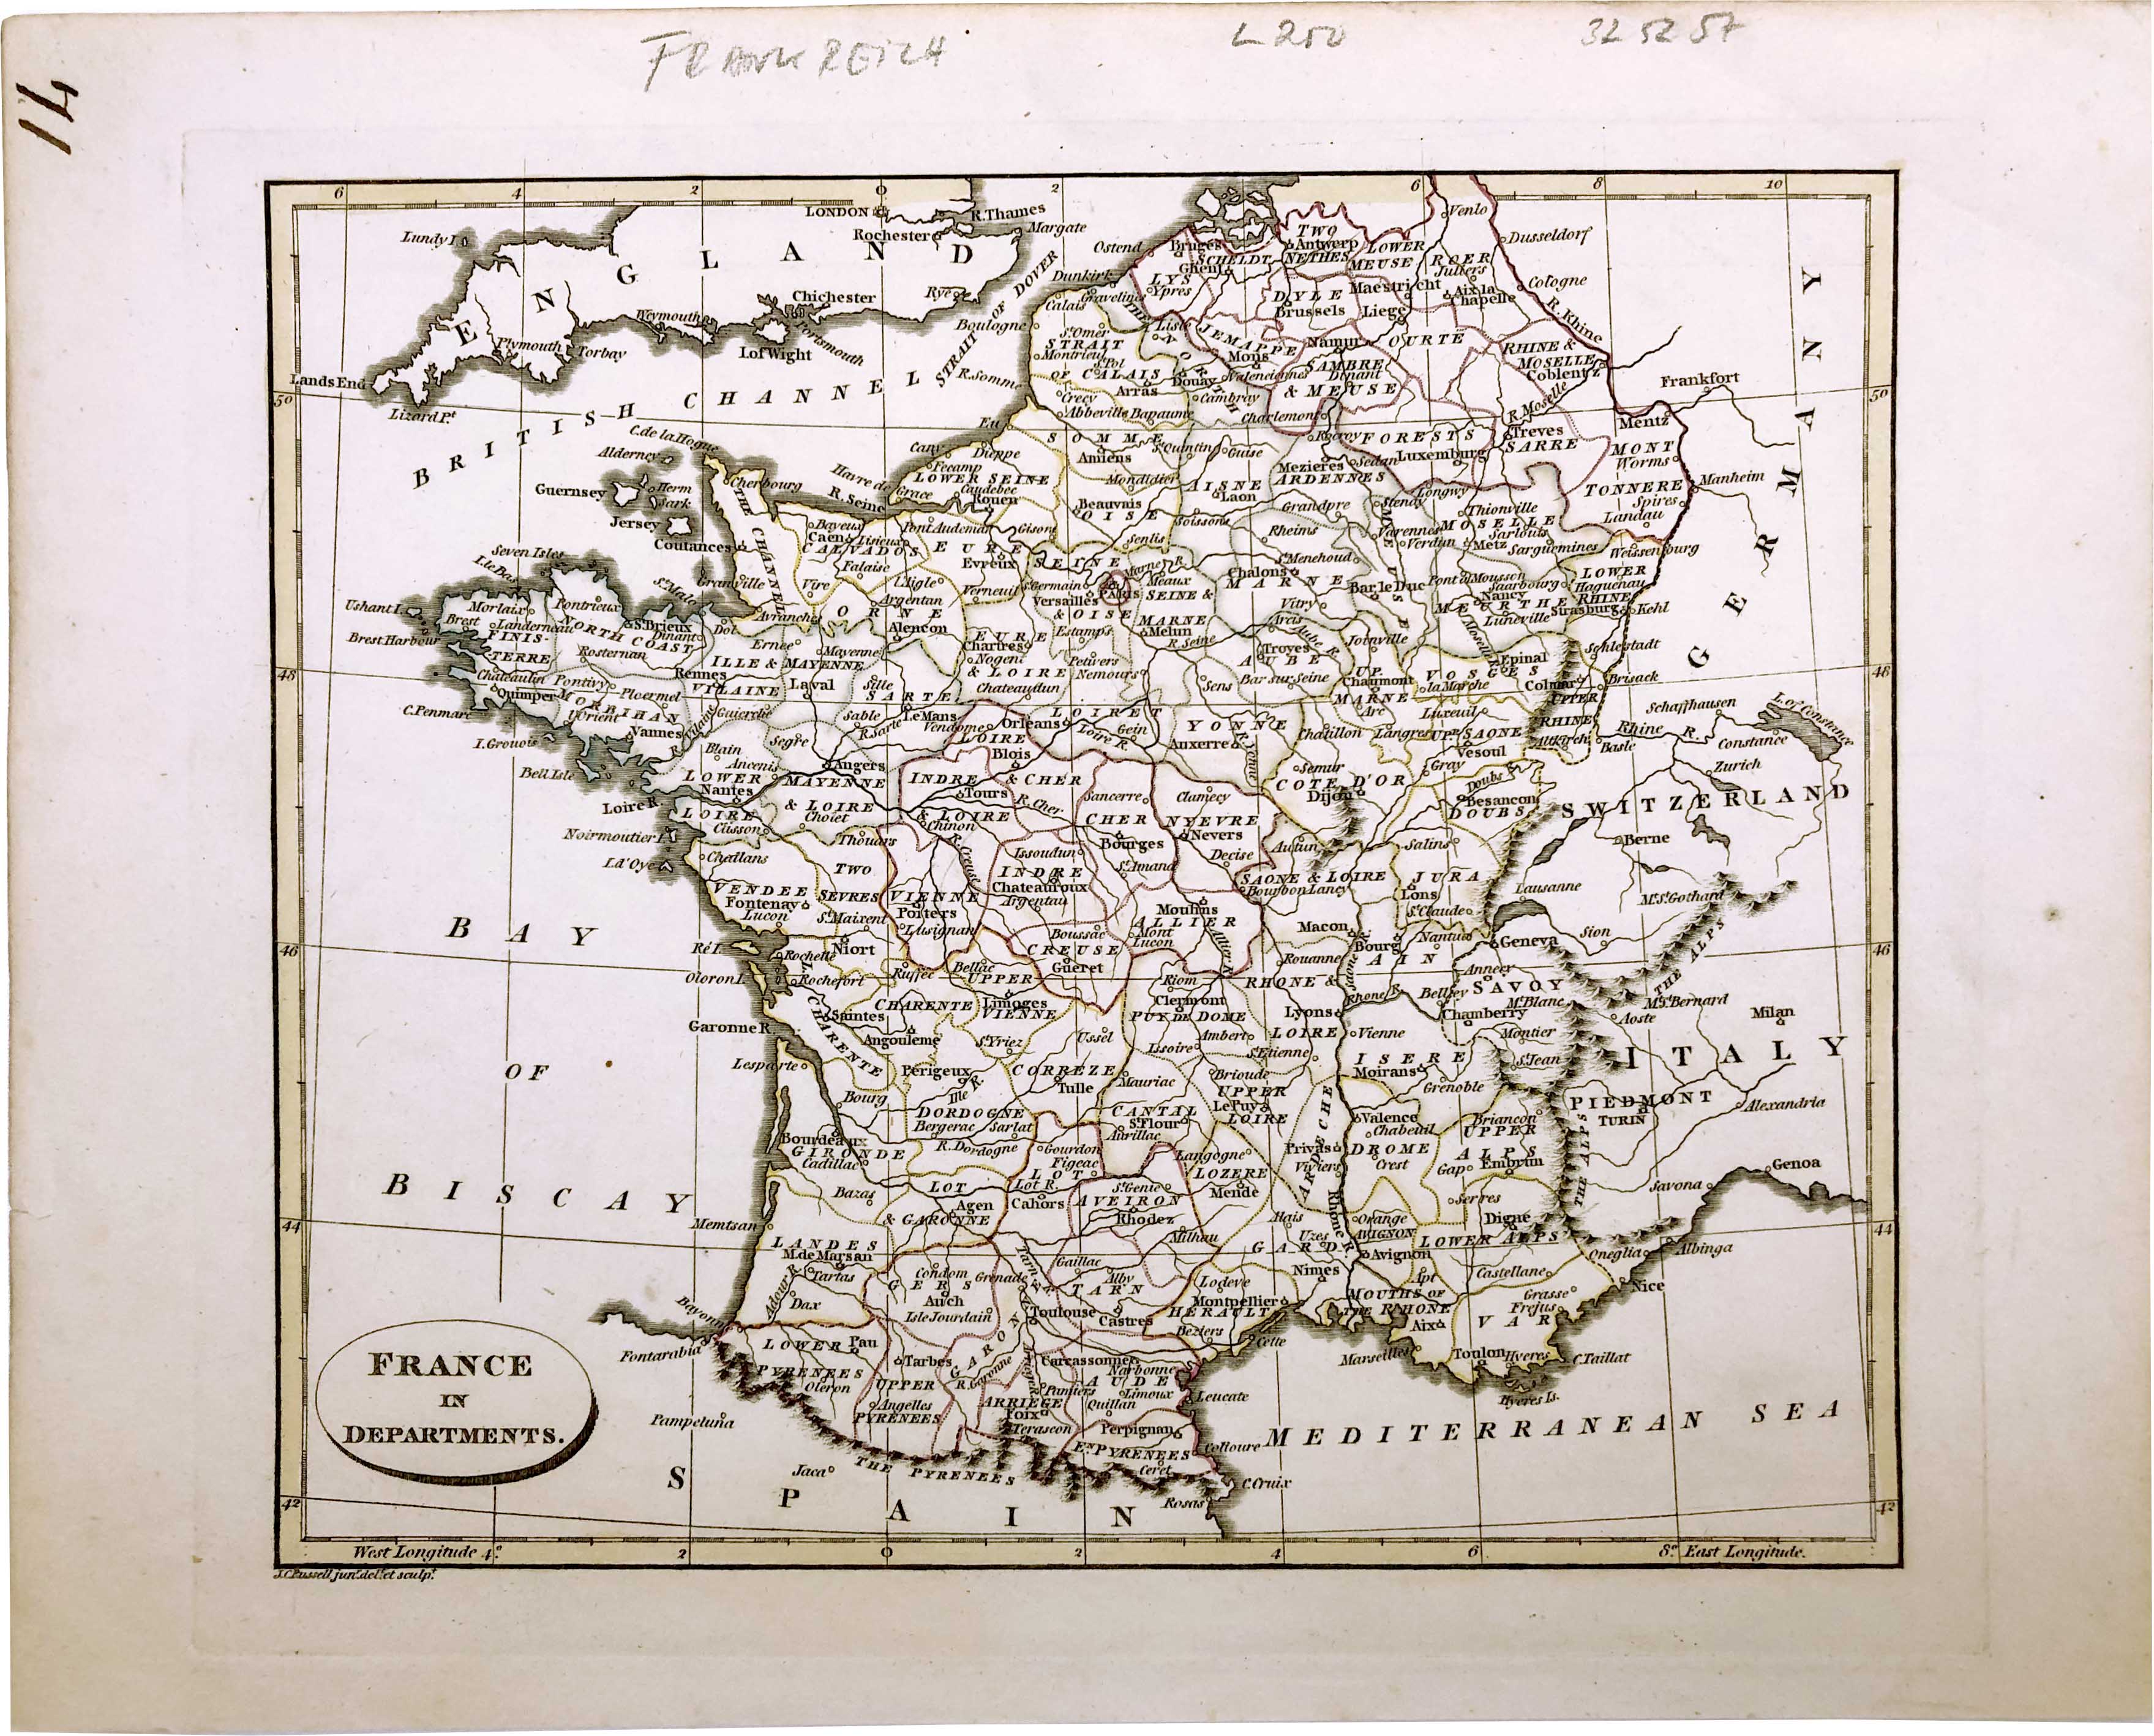 Frankreich im Jahr 1808 von John C. Russell jun.